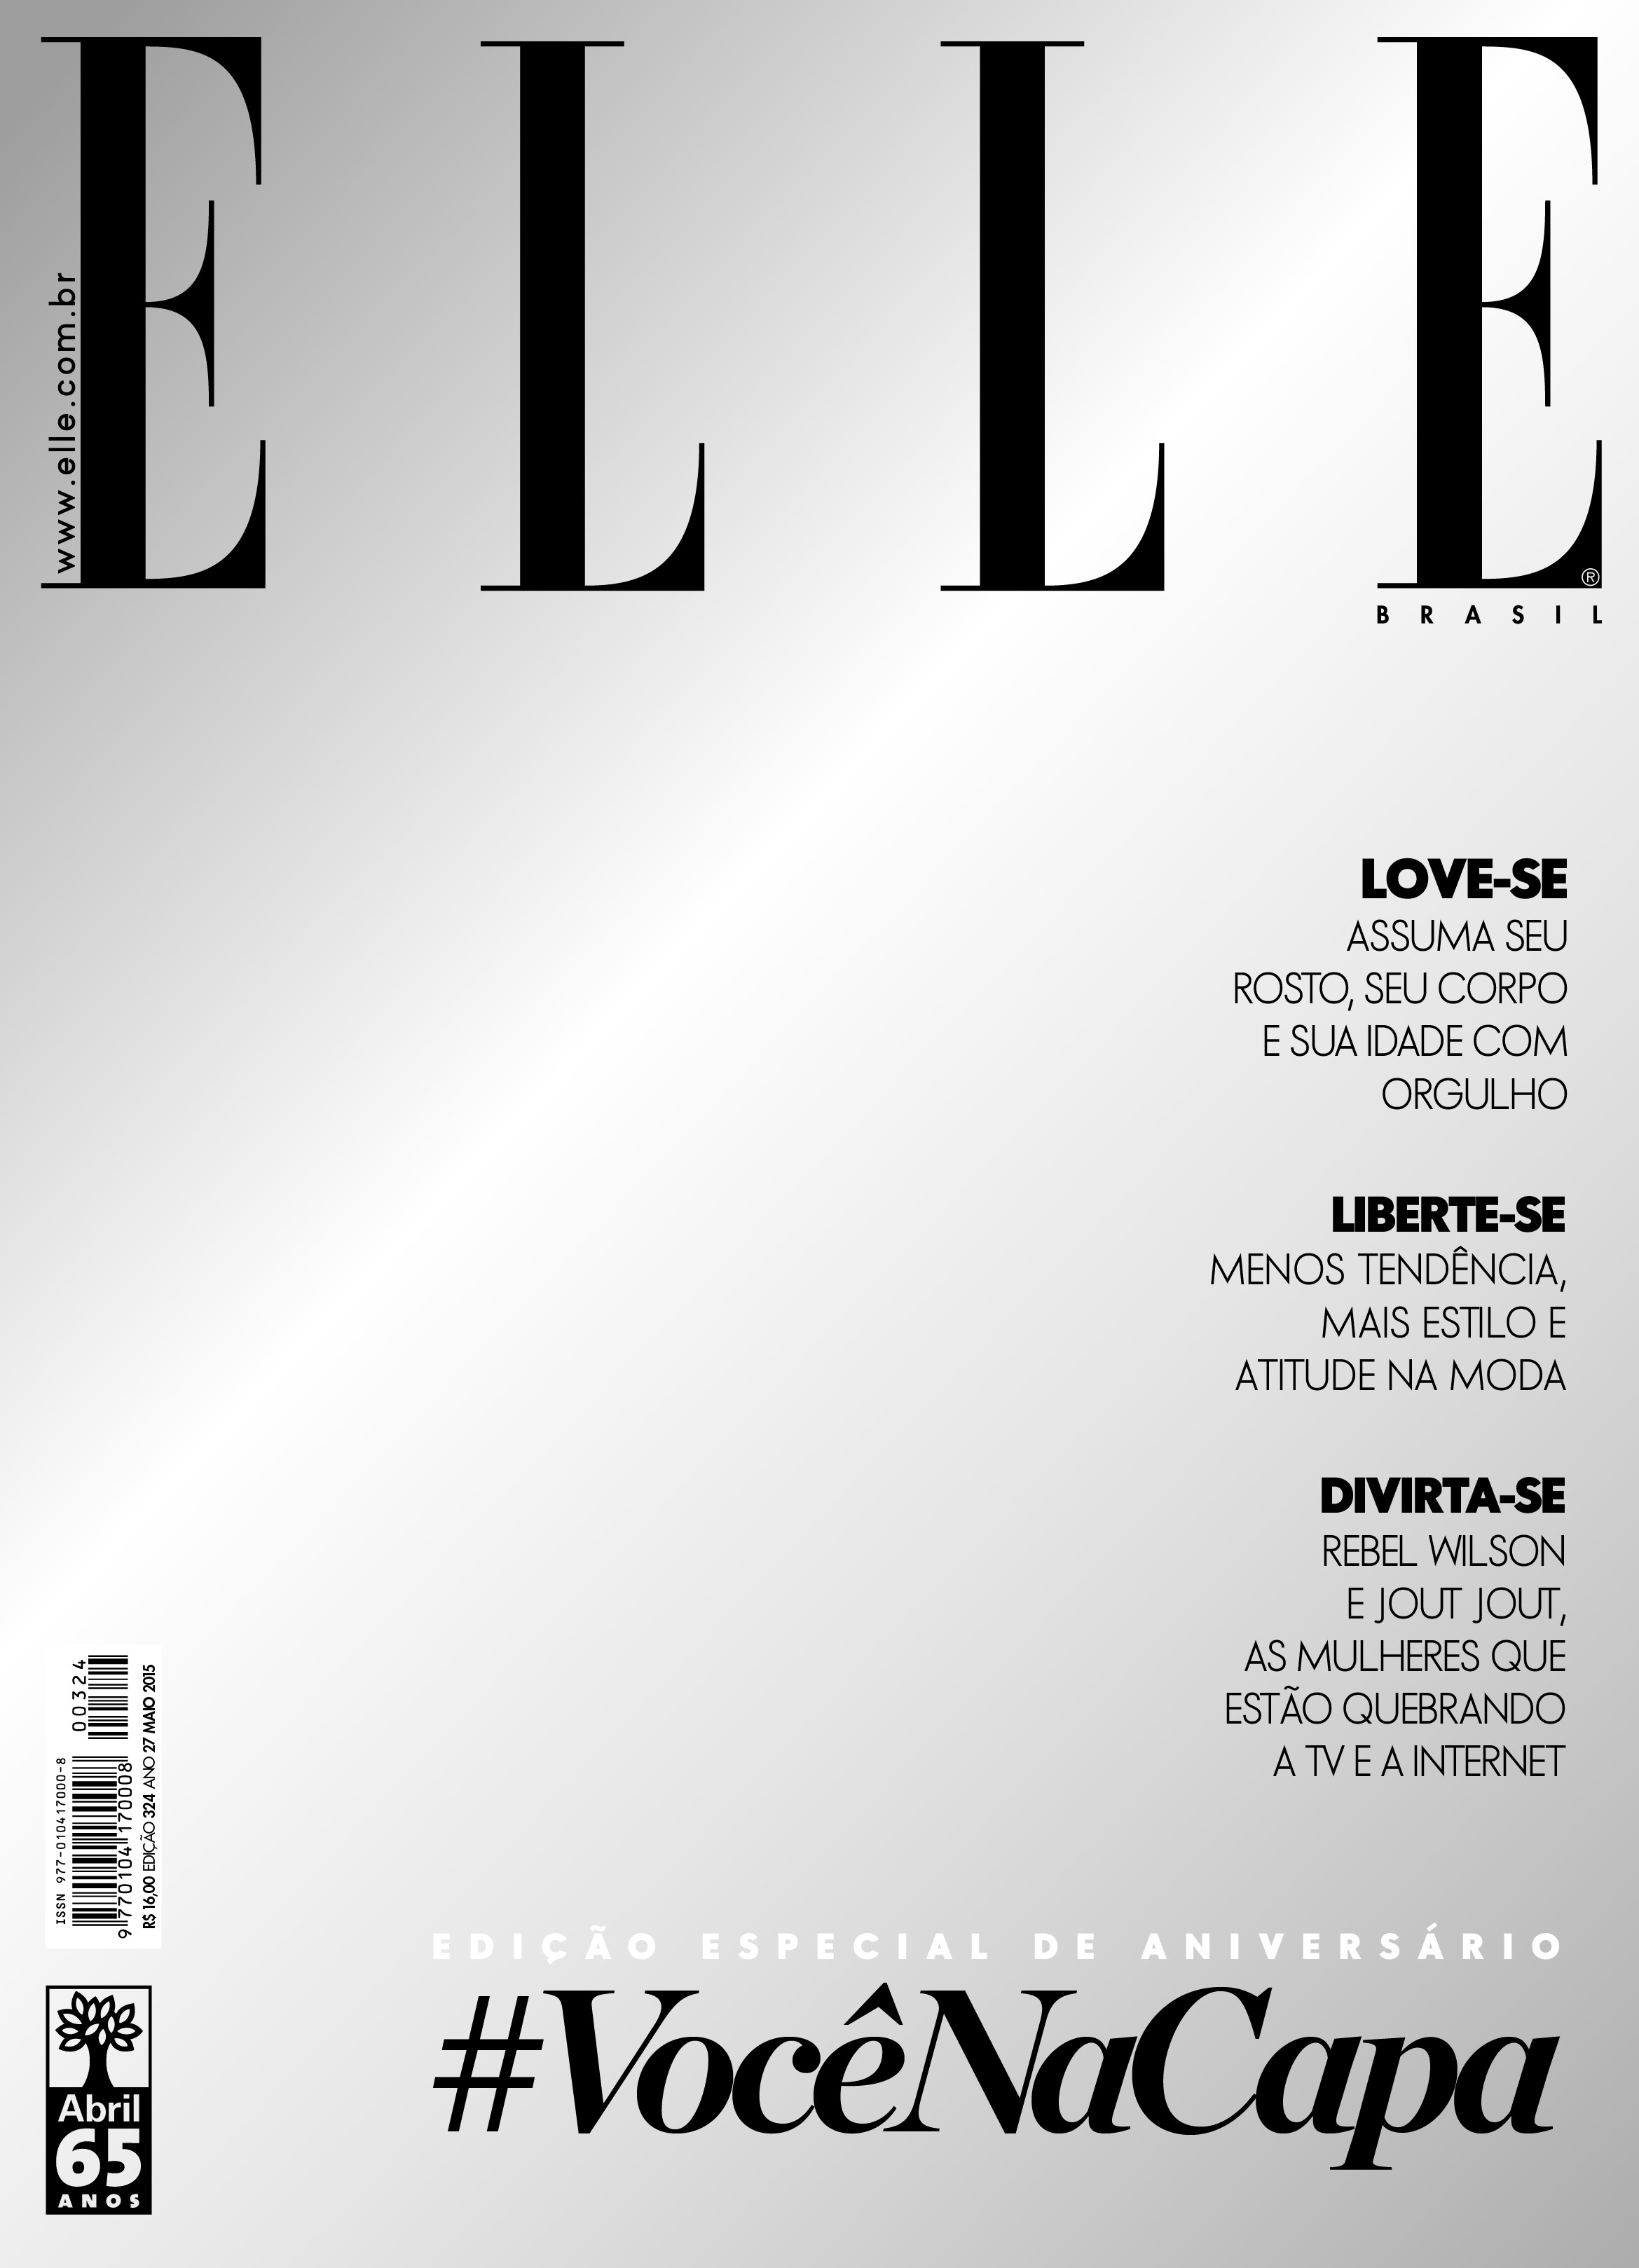 Elle Brasil lança edição com cinco capas diferentes